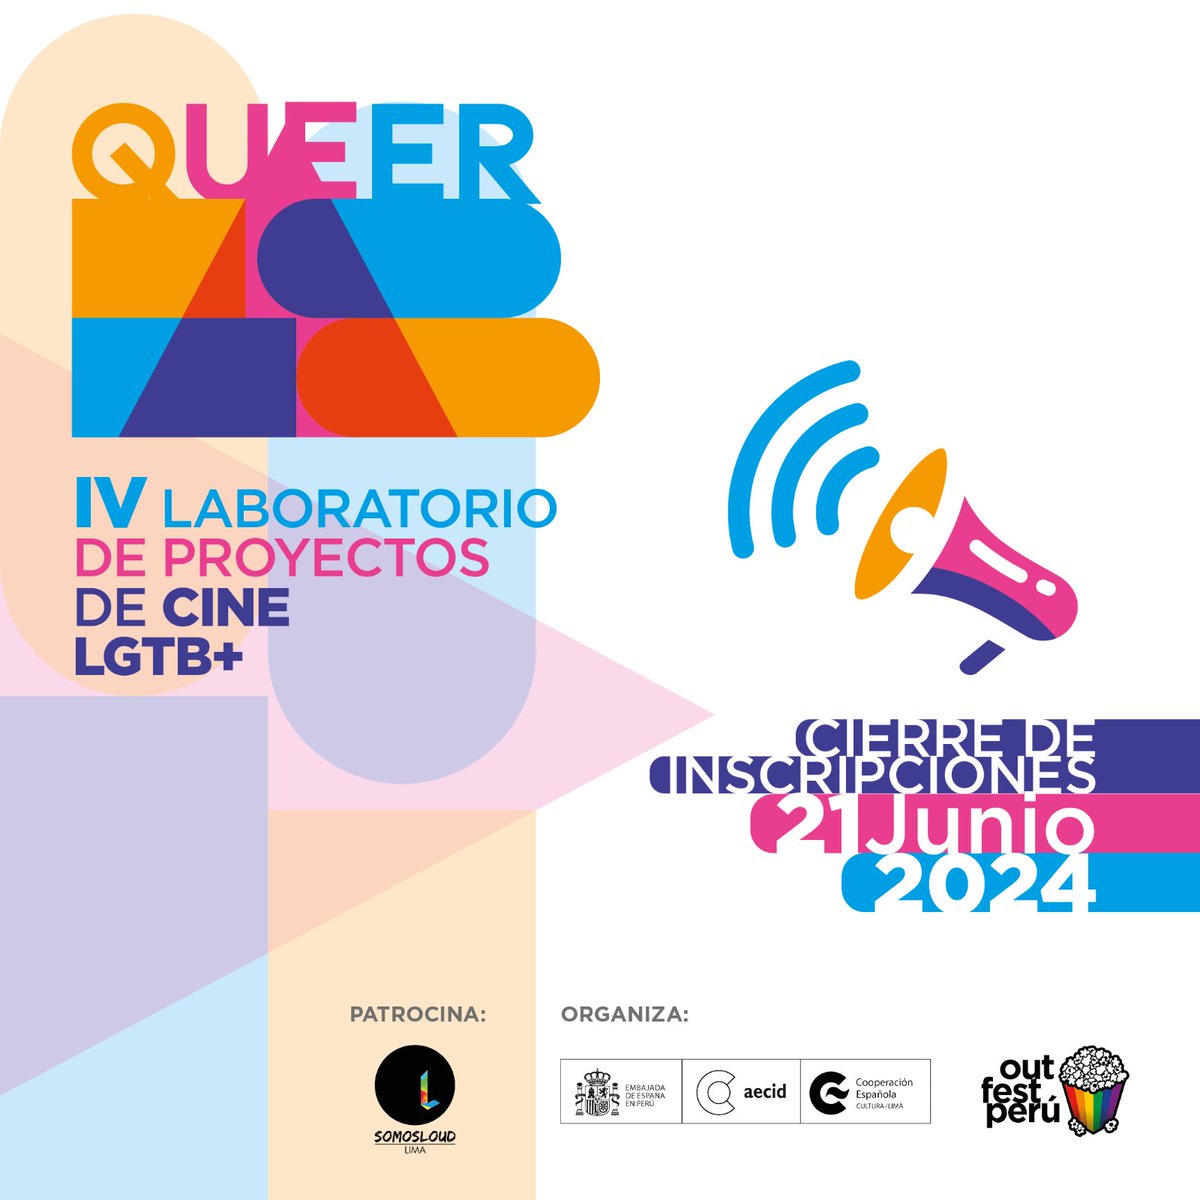 En el marco de la edición 21 del Festival Internacional de Cine LGBT+ de Lima, convocamos el IV QUEERLAB Laboratorio de Proyectos de Cine LGTB+ a desarrollarse del 8 al 12 de Julio 2024. El objetivo es fortalecer las capacidades de estudiantes de comunicaciones y realizadores